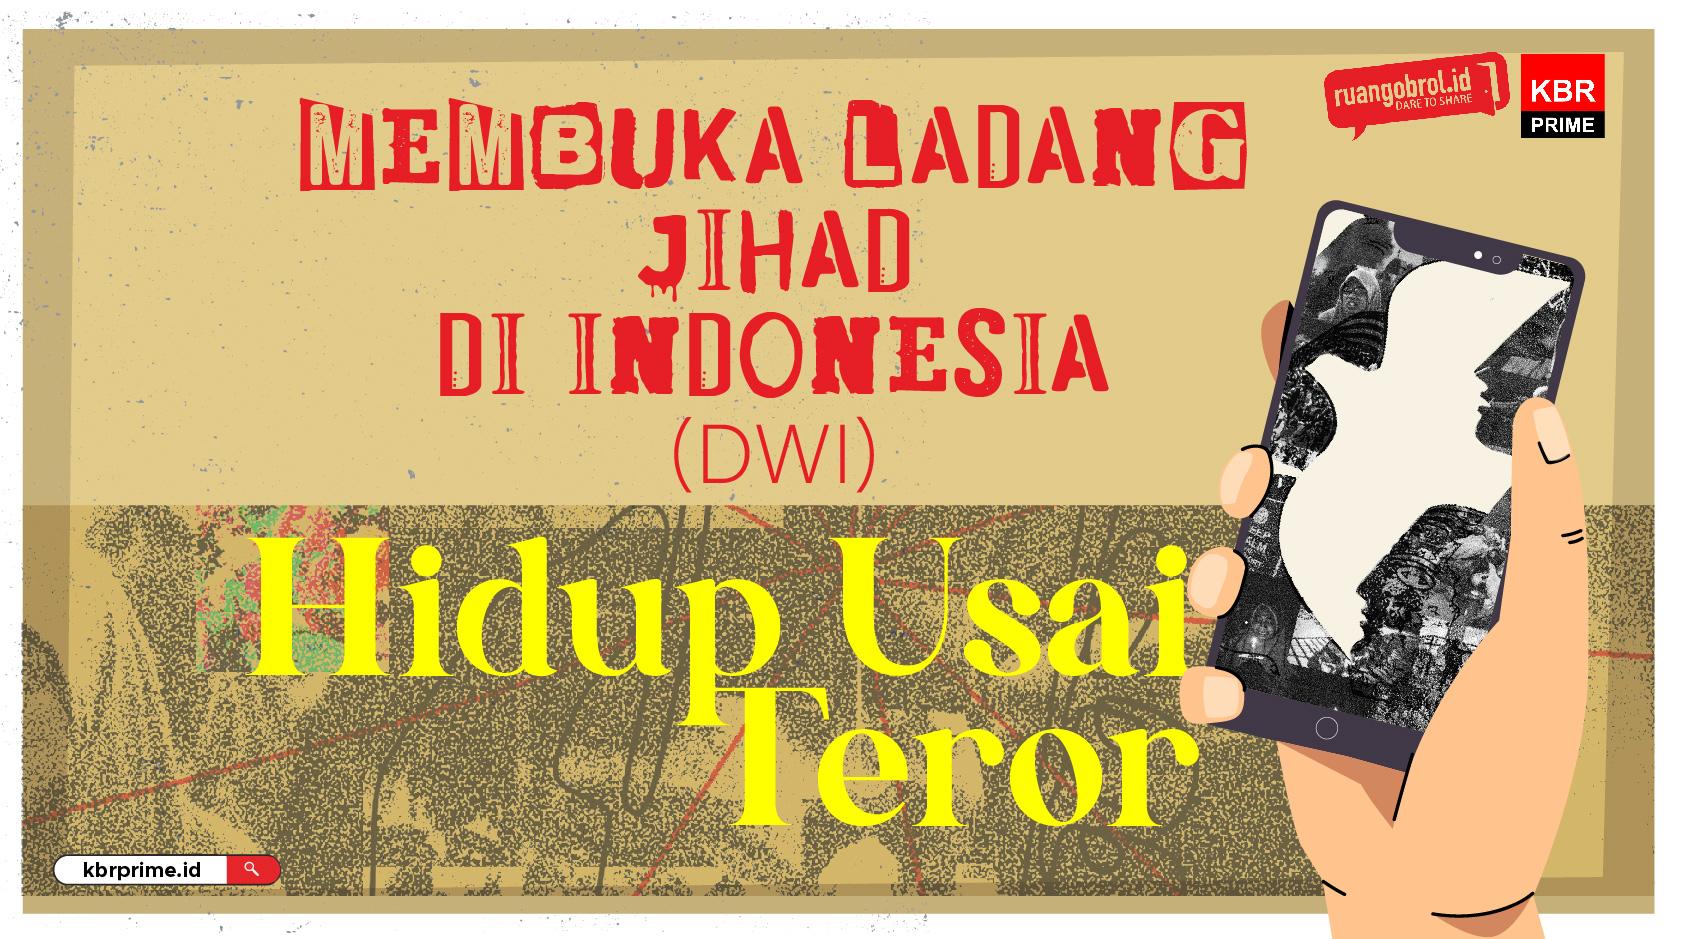 HIDUP USAI TEROR : Membuka Ladang Jihad di Indonesia